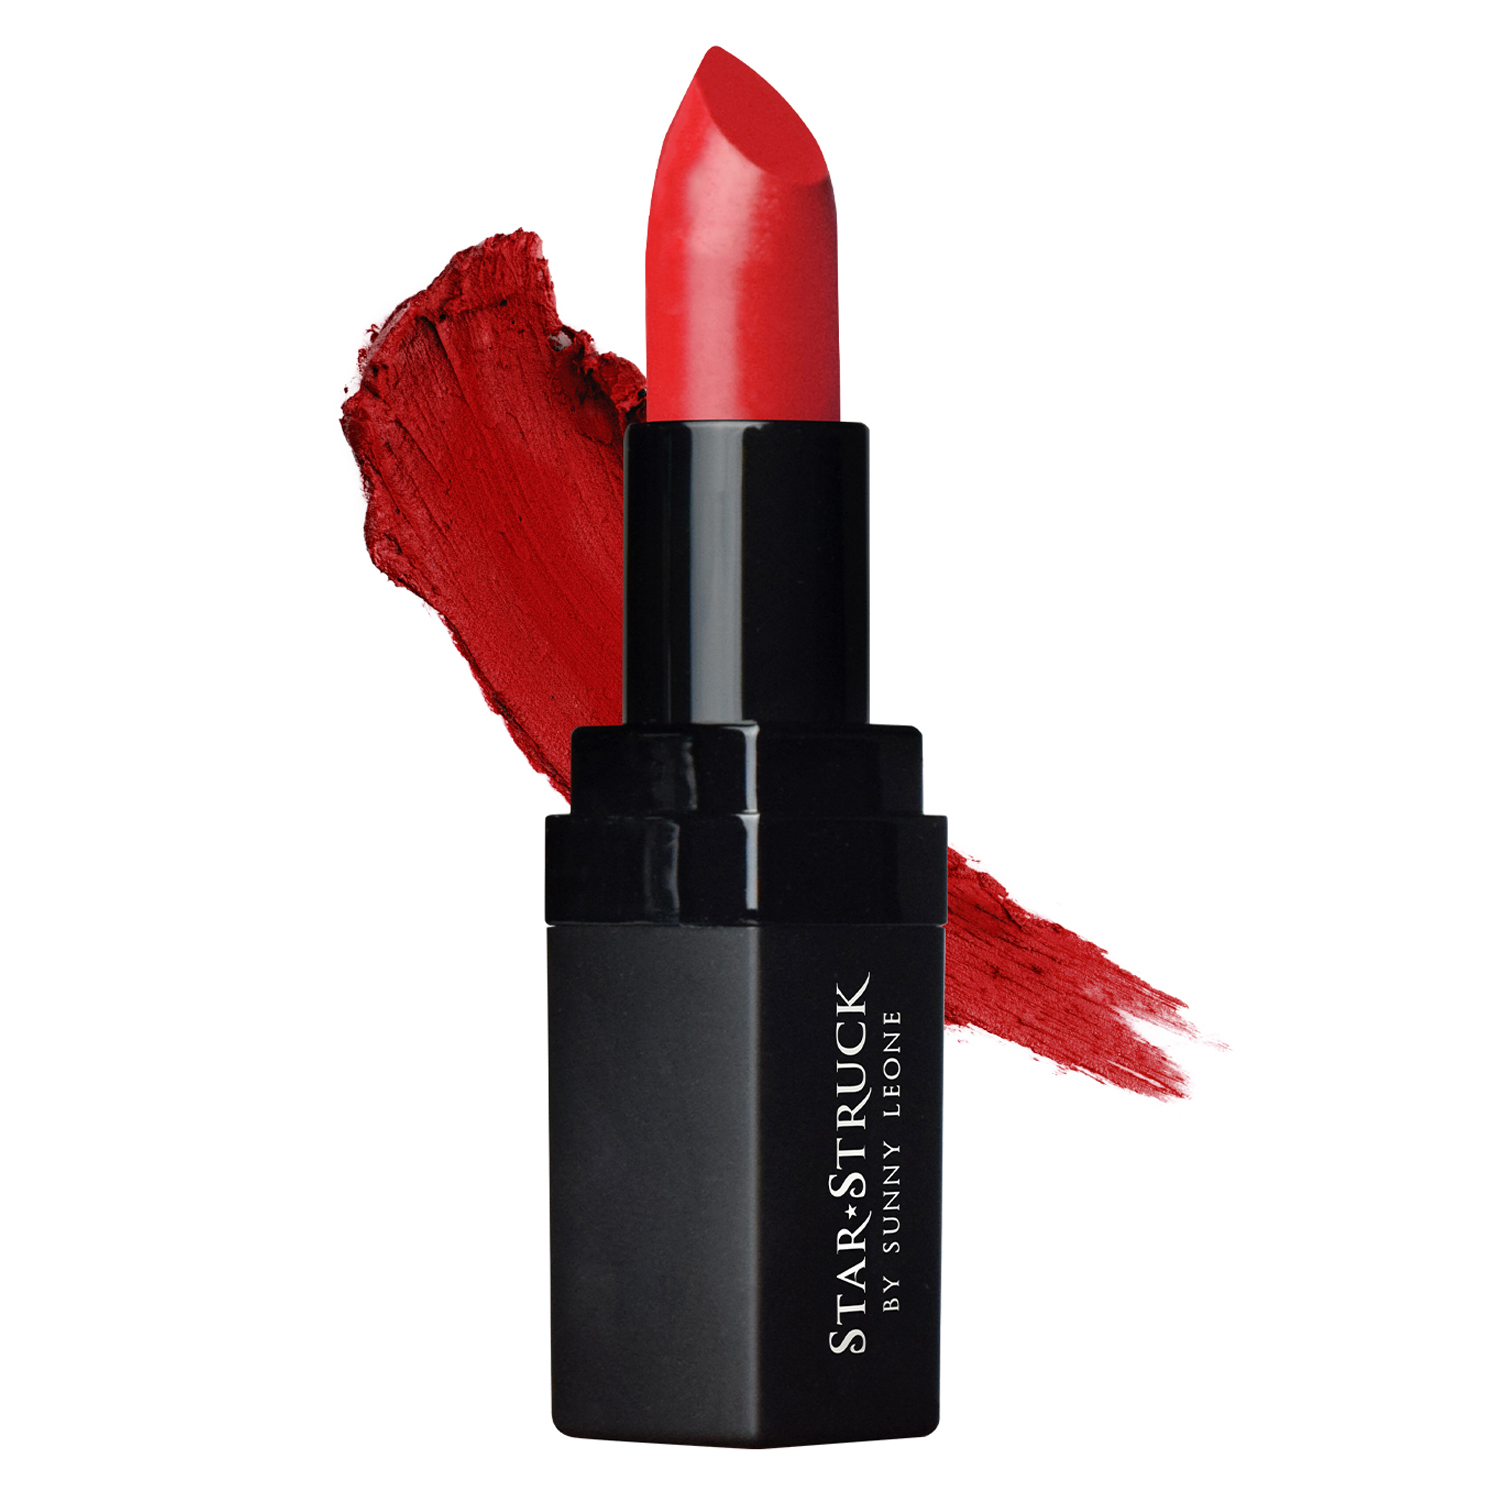 Star Struck by Sunny Leone Intense Matte Lipstick, 4.45gm-Lip Color - Cherry Bomb